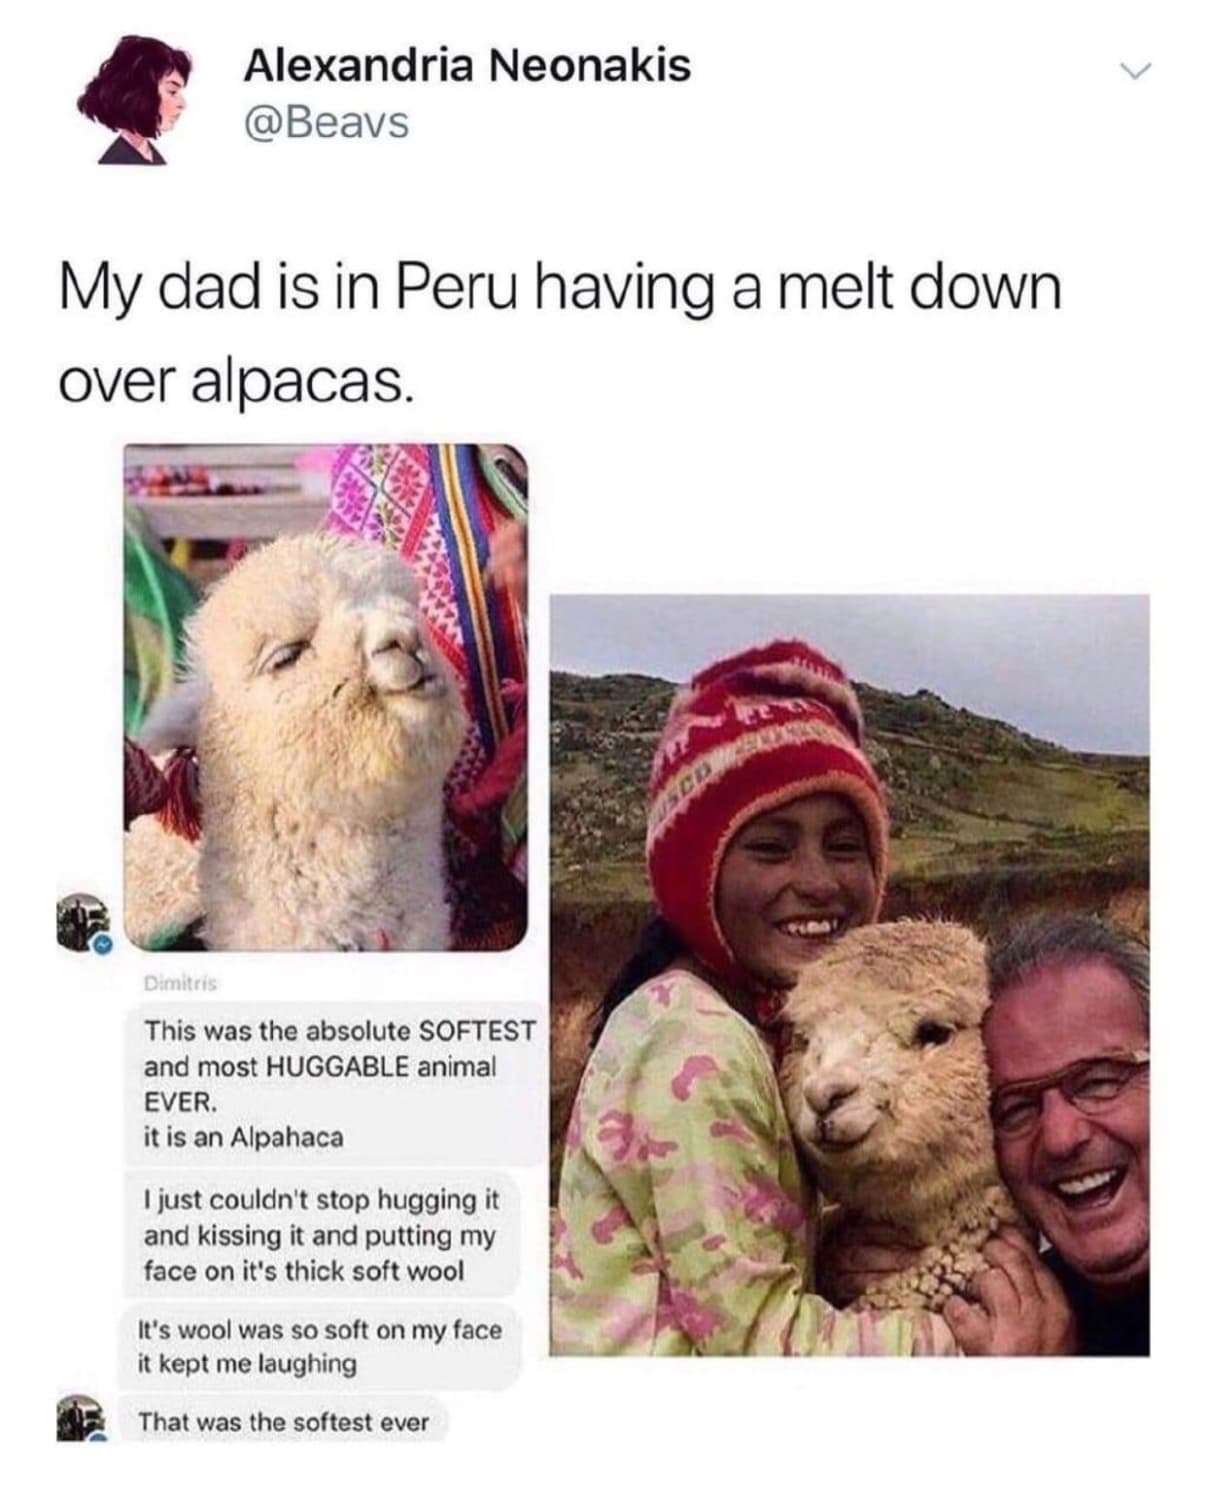 Oh alpacas